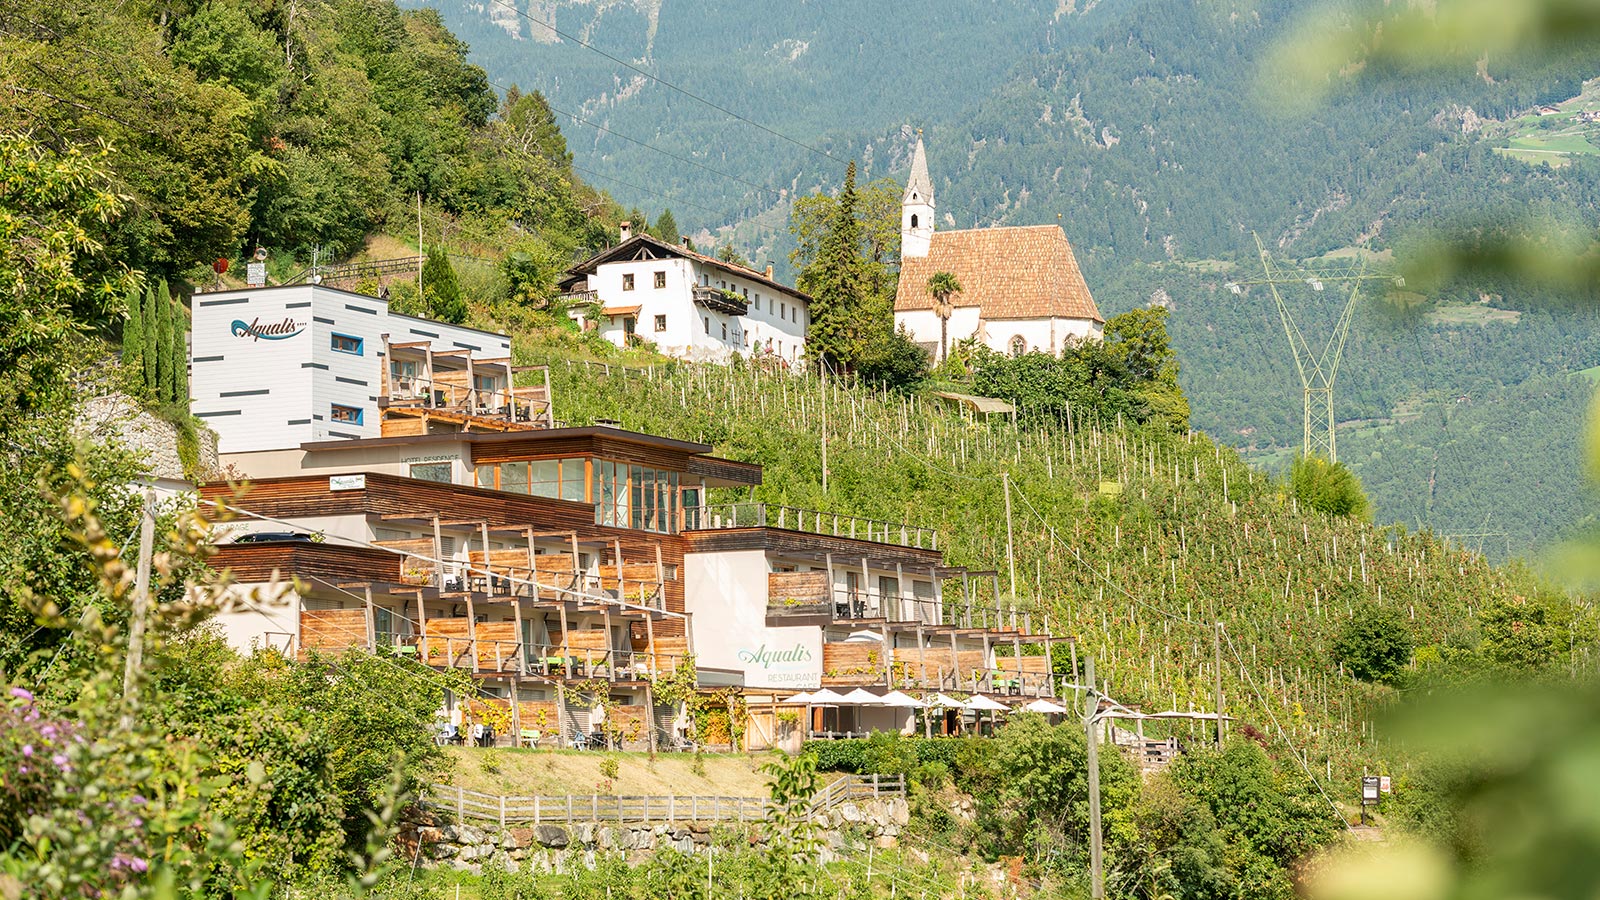 Blick auf Aqualis, Ferienwohnung in Marling in Südtirol